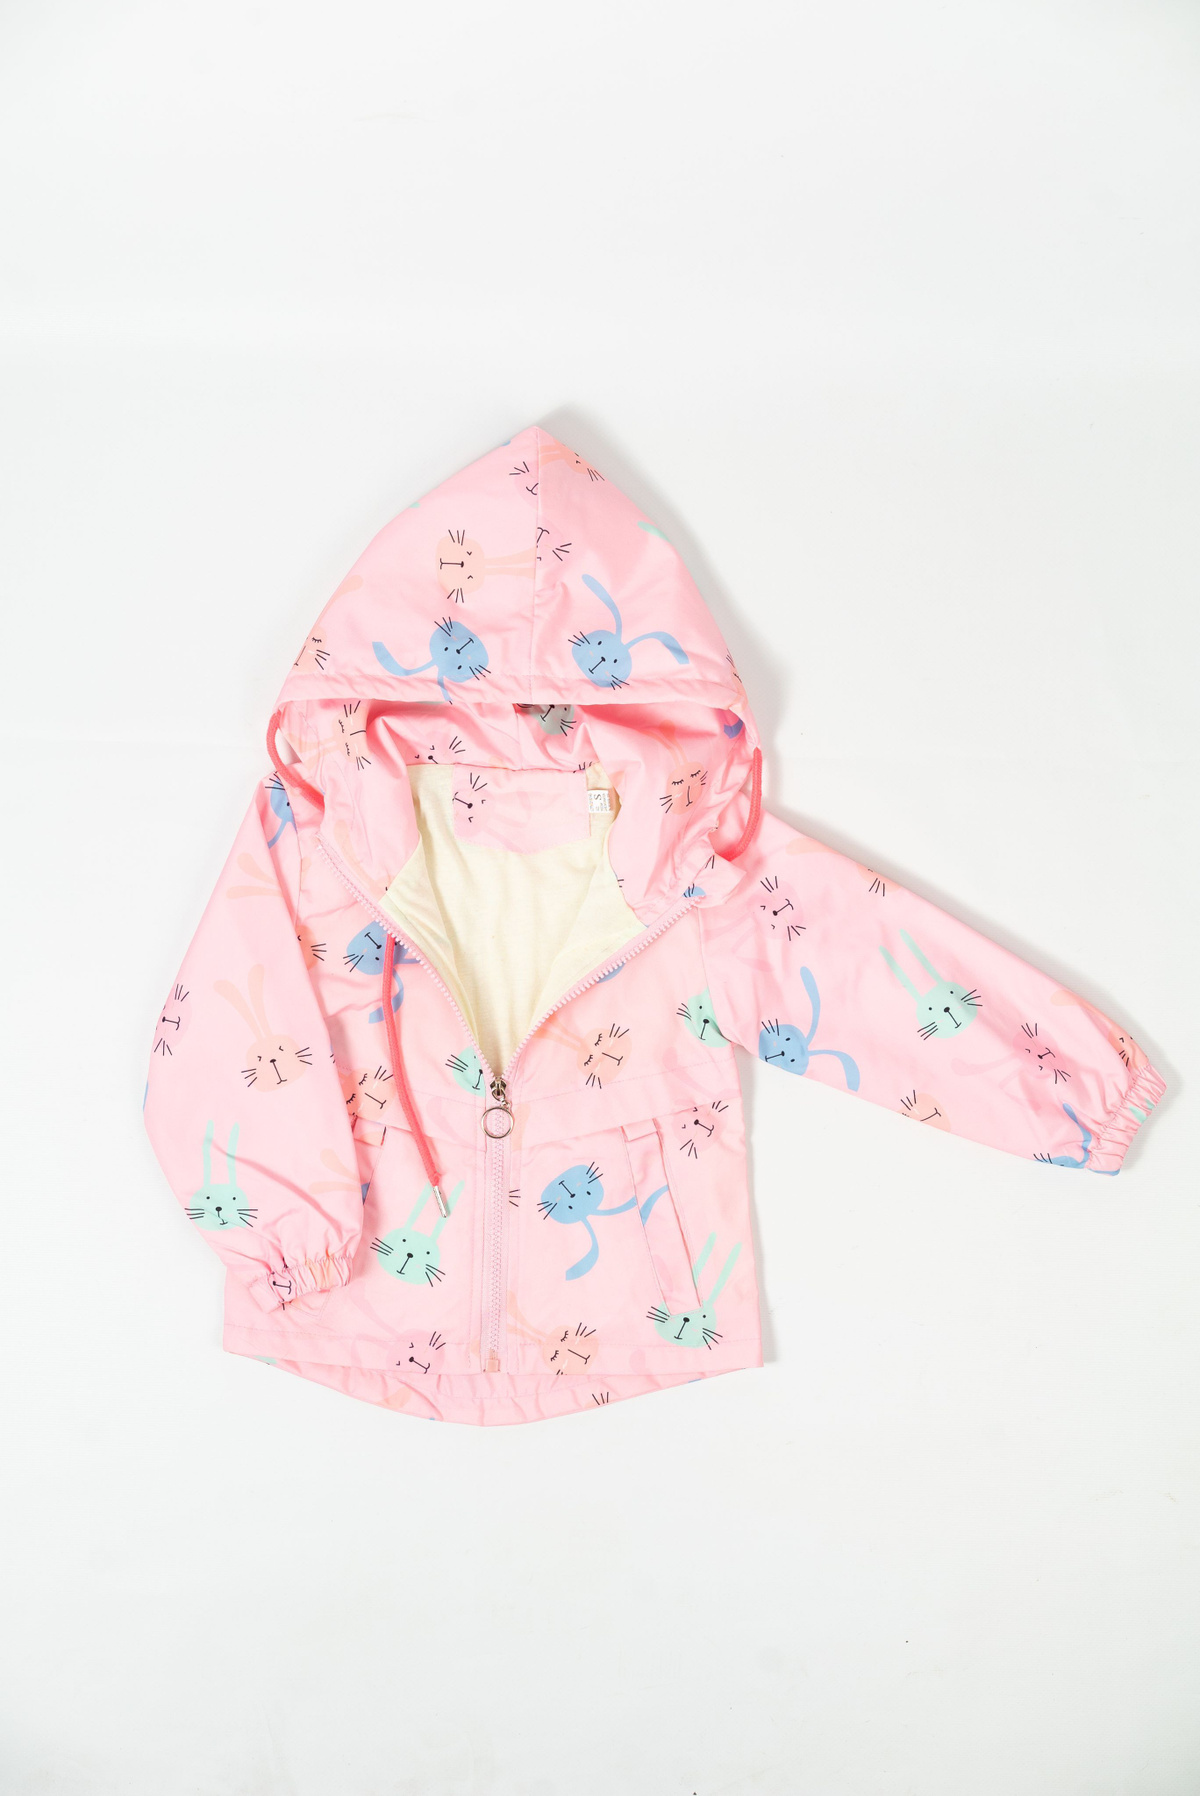 Ветровка детская для девочки розовая с рисунком на подкладке хлопок с капюшоном. Застежка молния, резинка на рукавах.